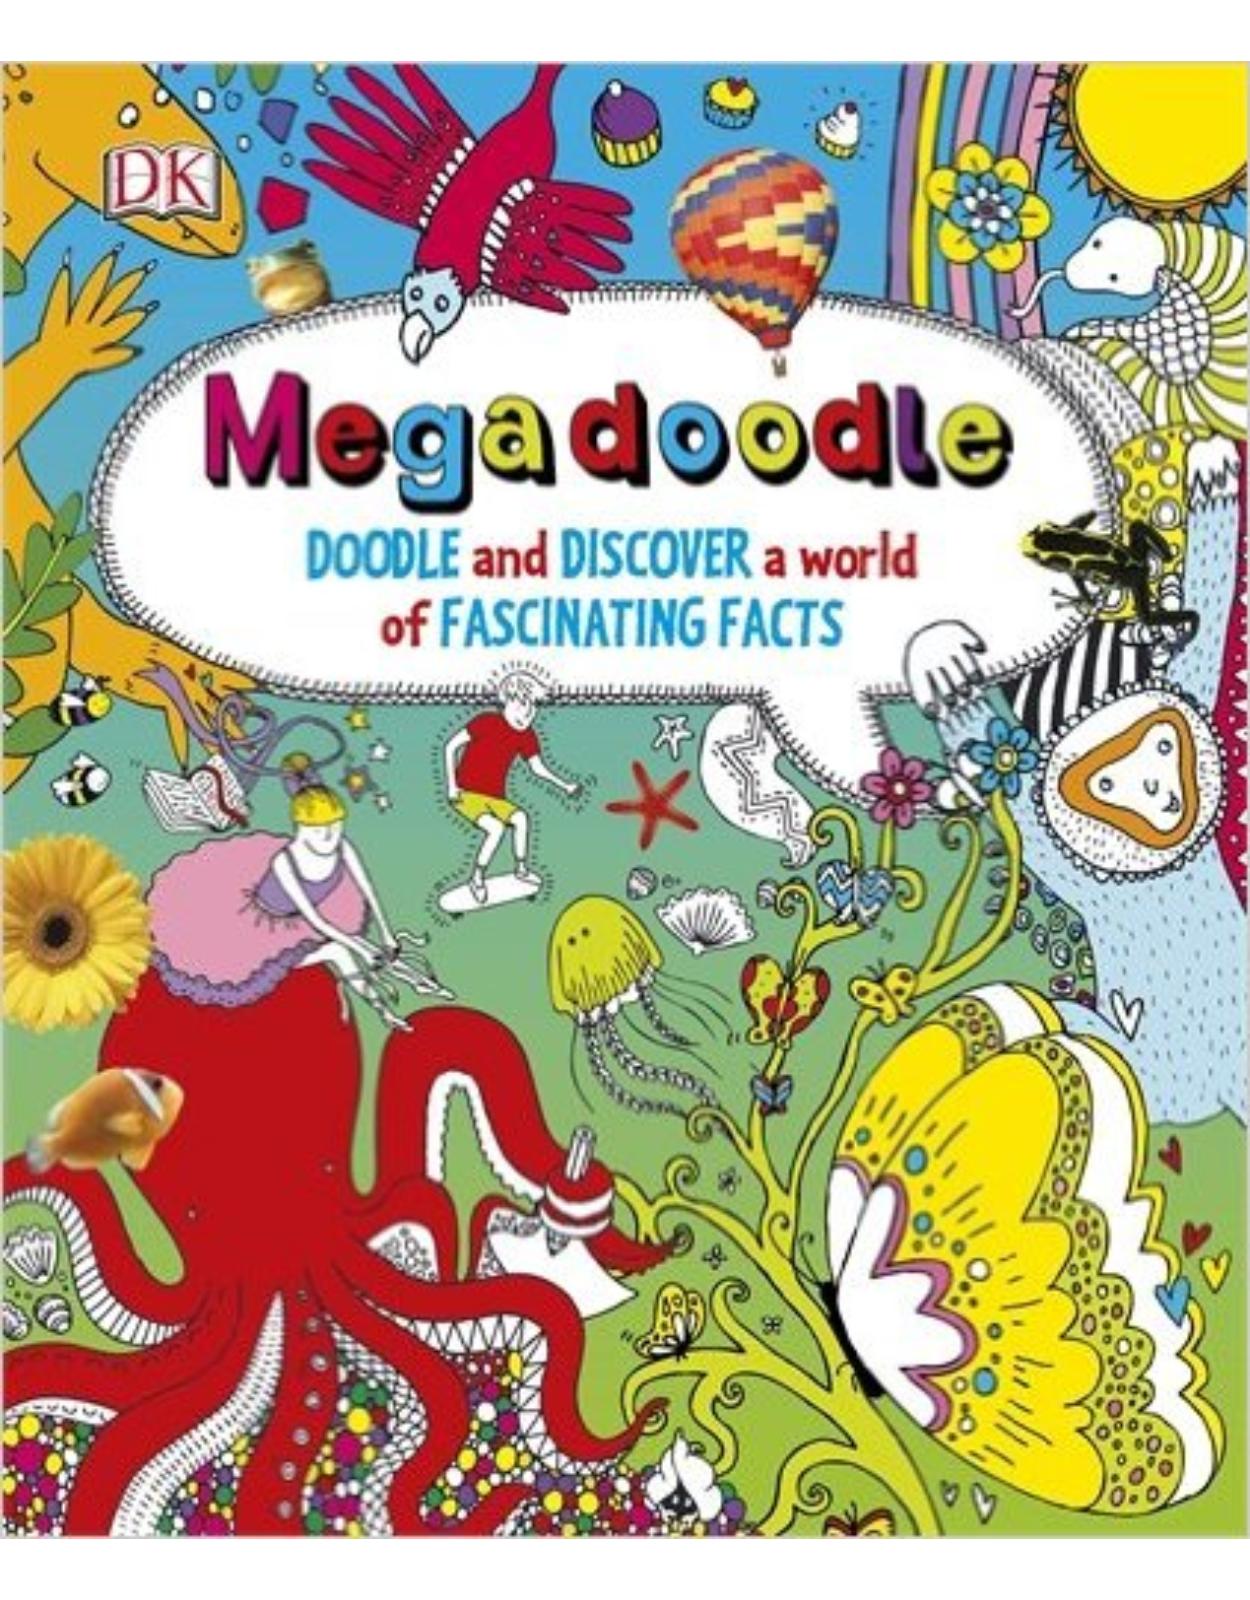 Megadoodle